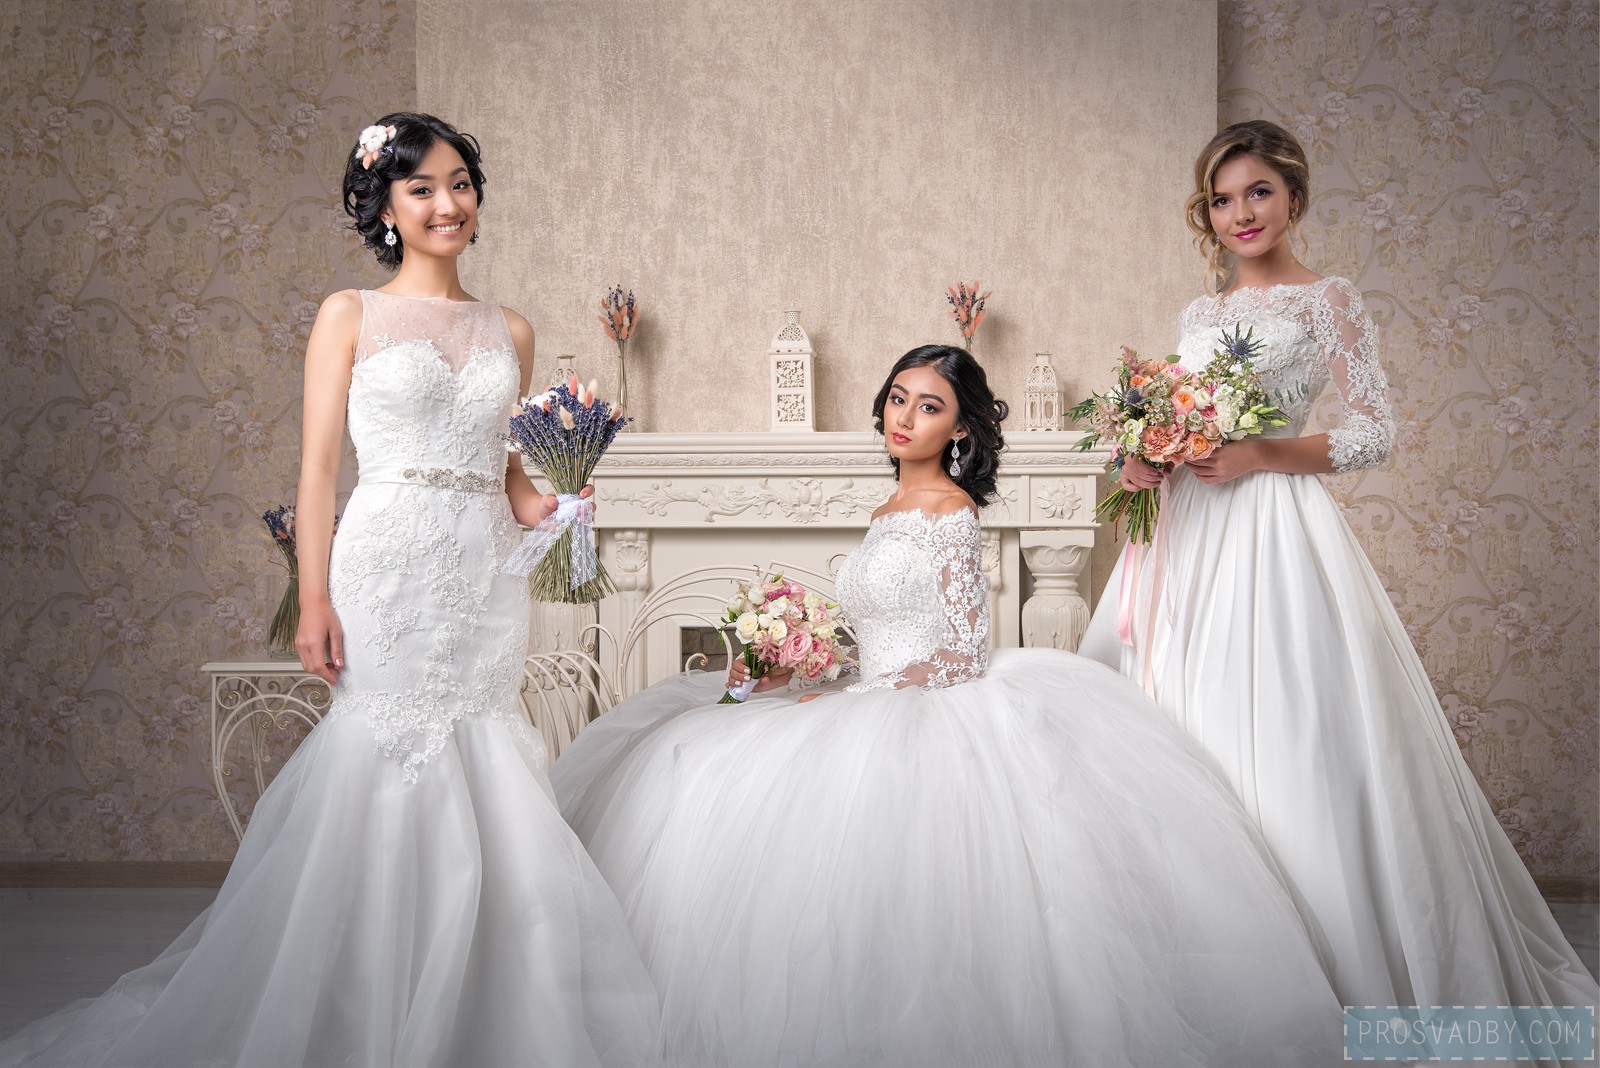 Сабина, Индира и Анастасия прошли наш кастинг и получили персональную фотосессию и преображение в стиле Утро невесты.